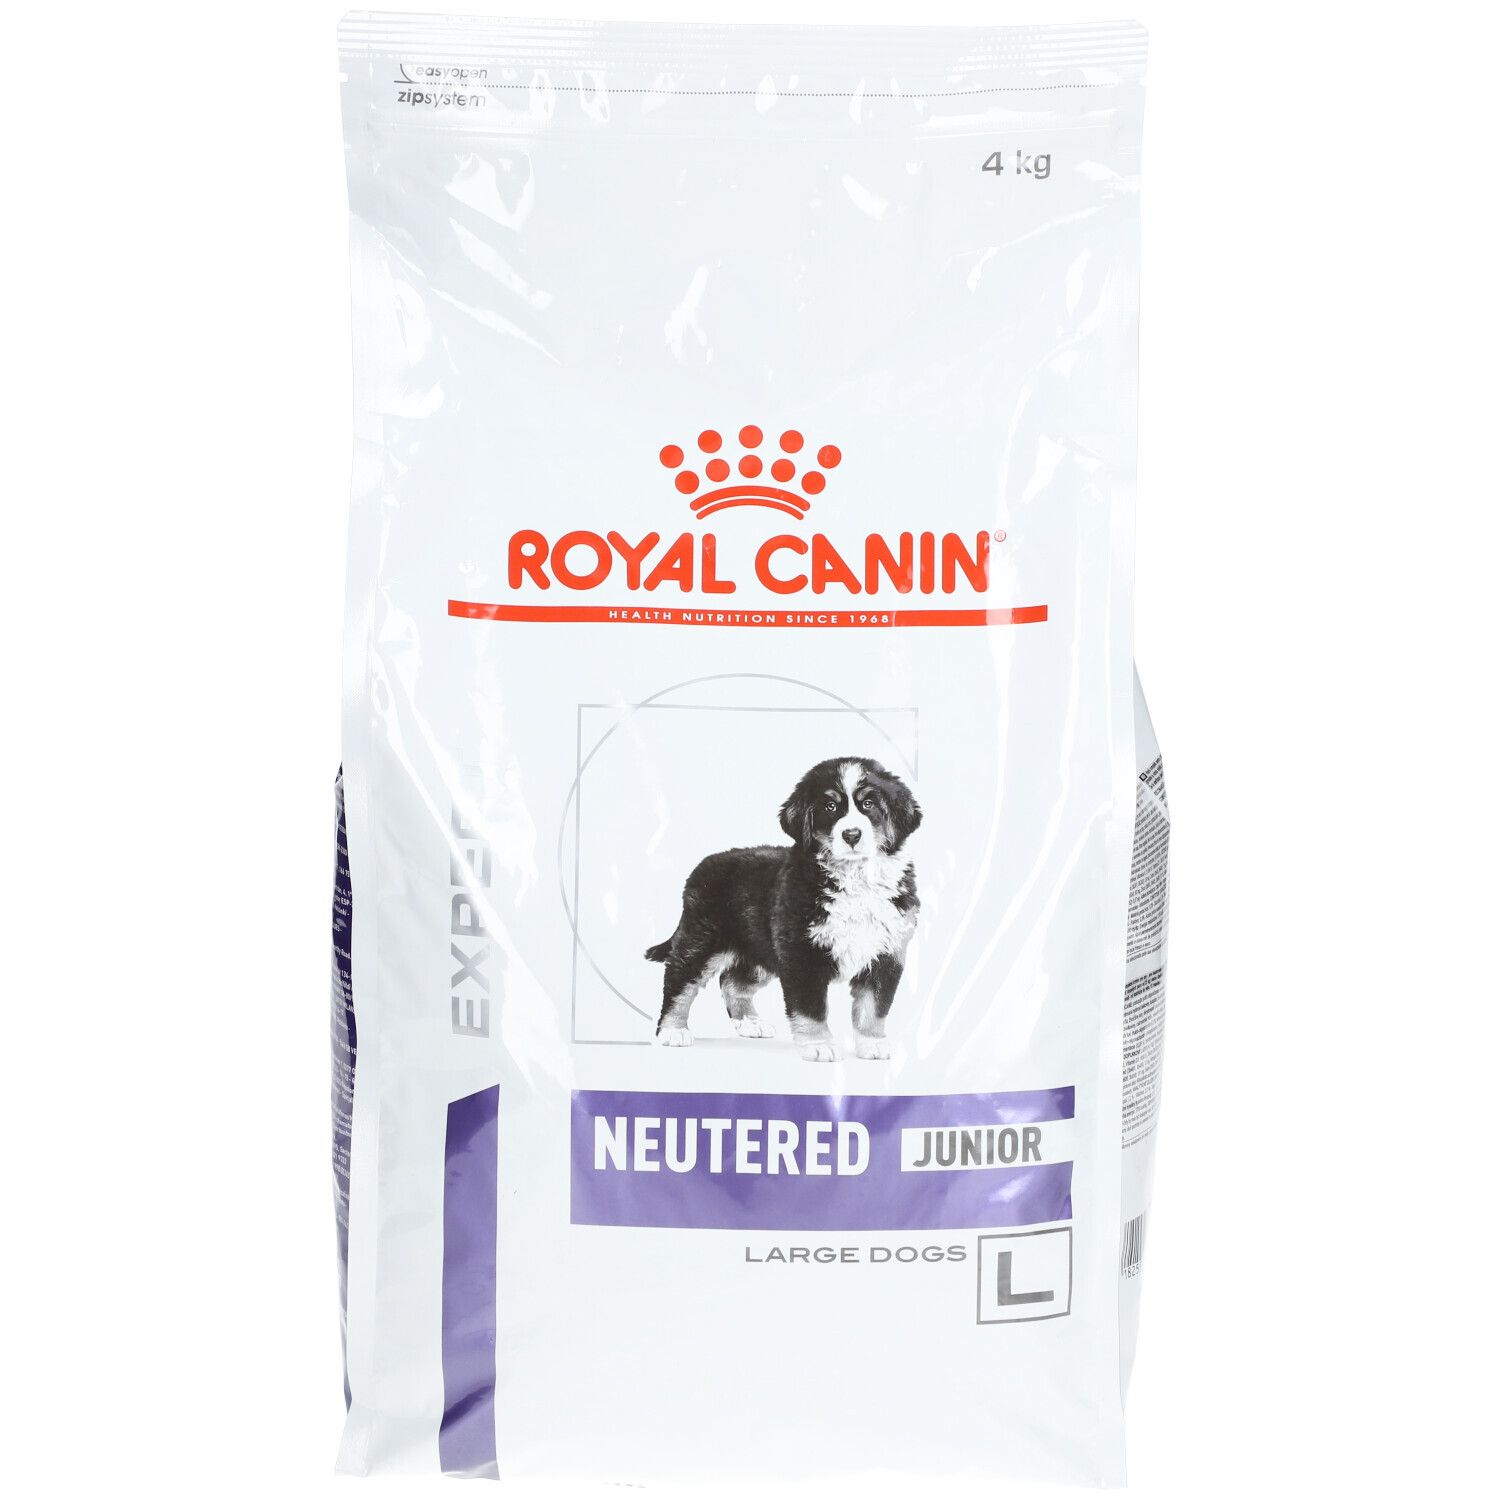 Royal Canin® Neutered Junior Large Dogs - Aliment vétérinaire pour chiot